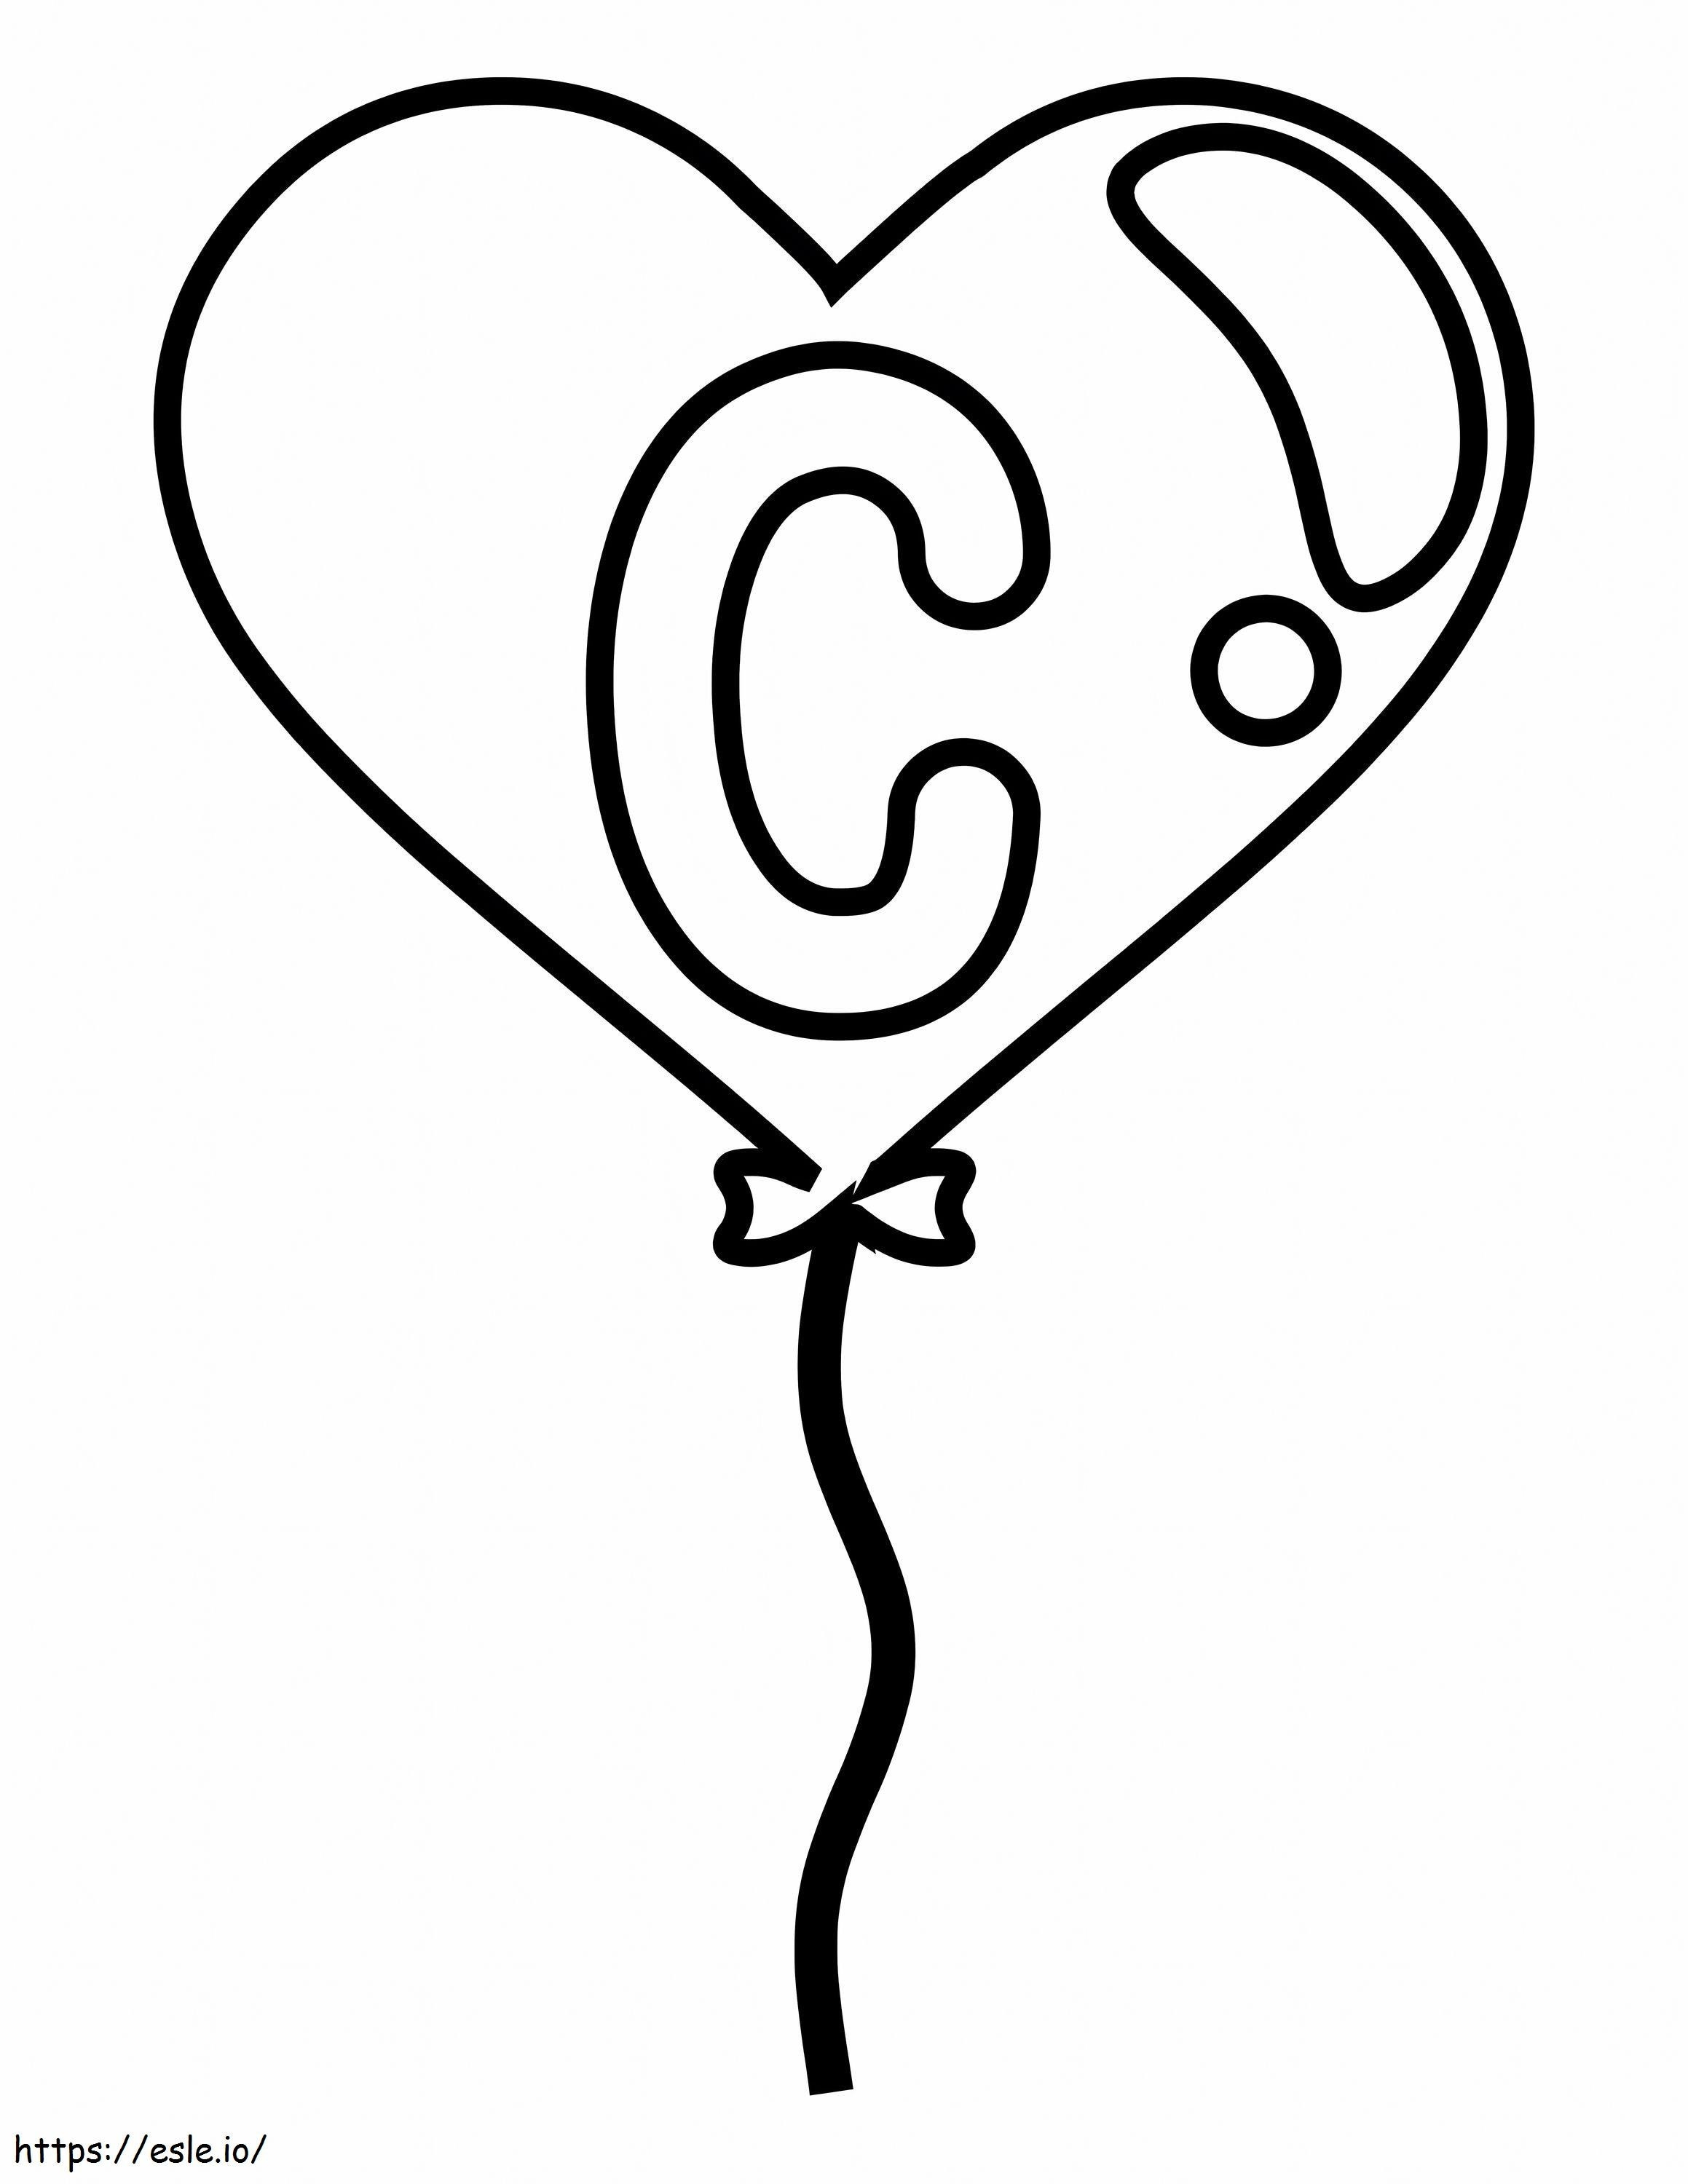 Letra C Fácil Em Balão De Coração para colorir